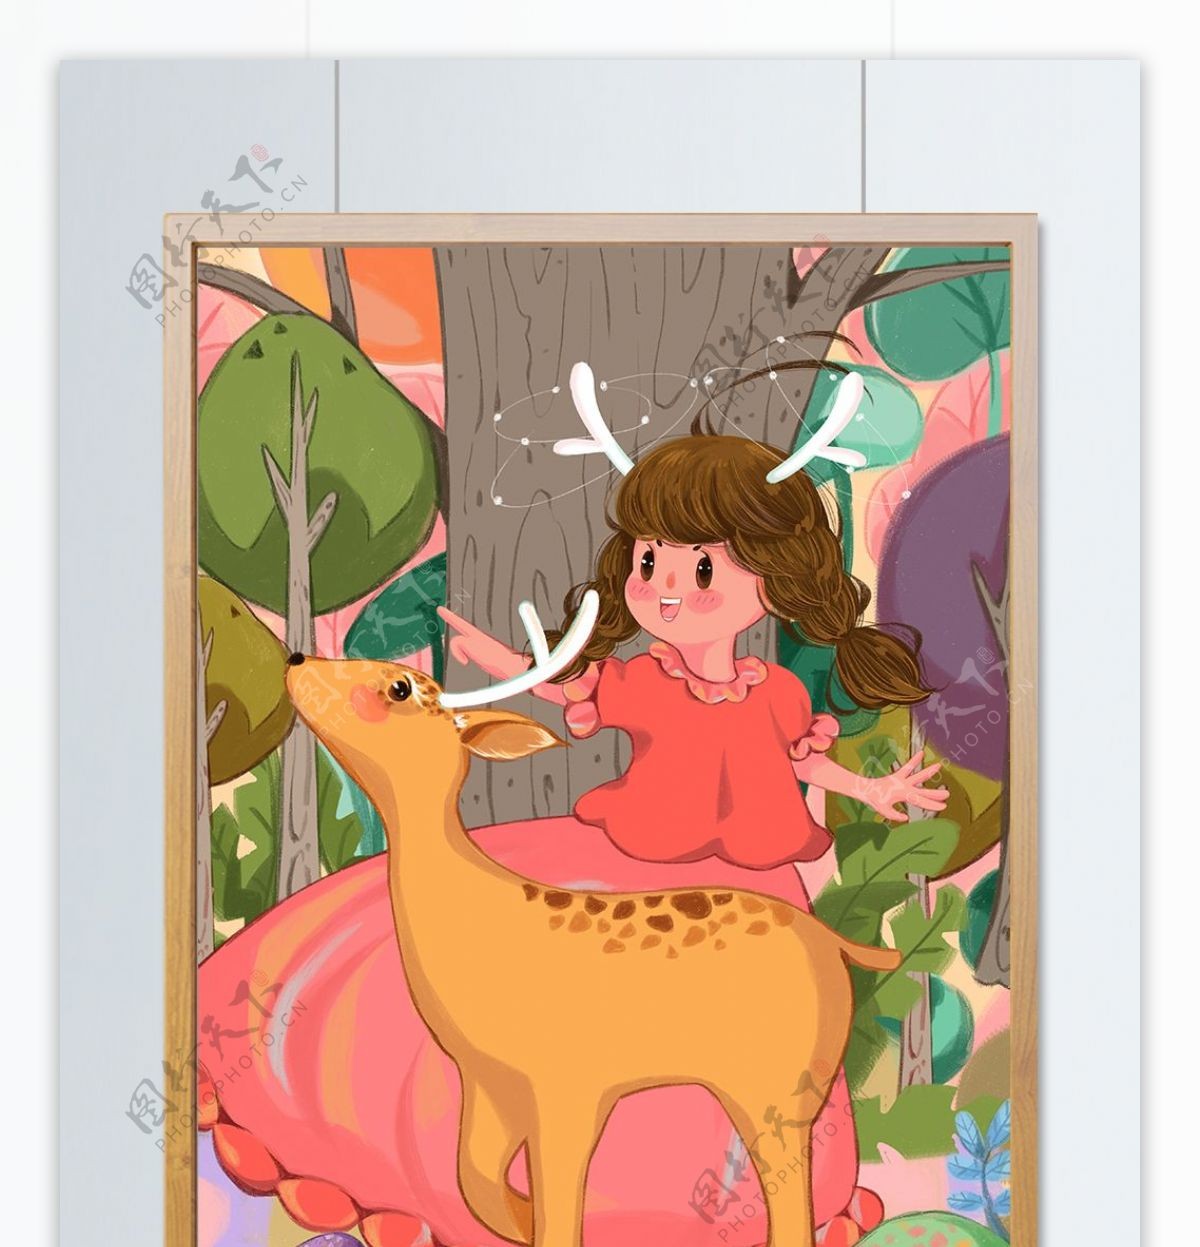 林深时见鹿治愈系烂漫女孩与鹿玩耍温馨插画